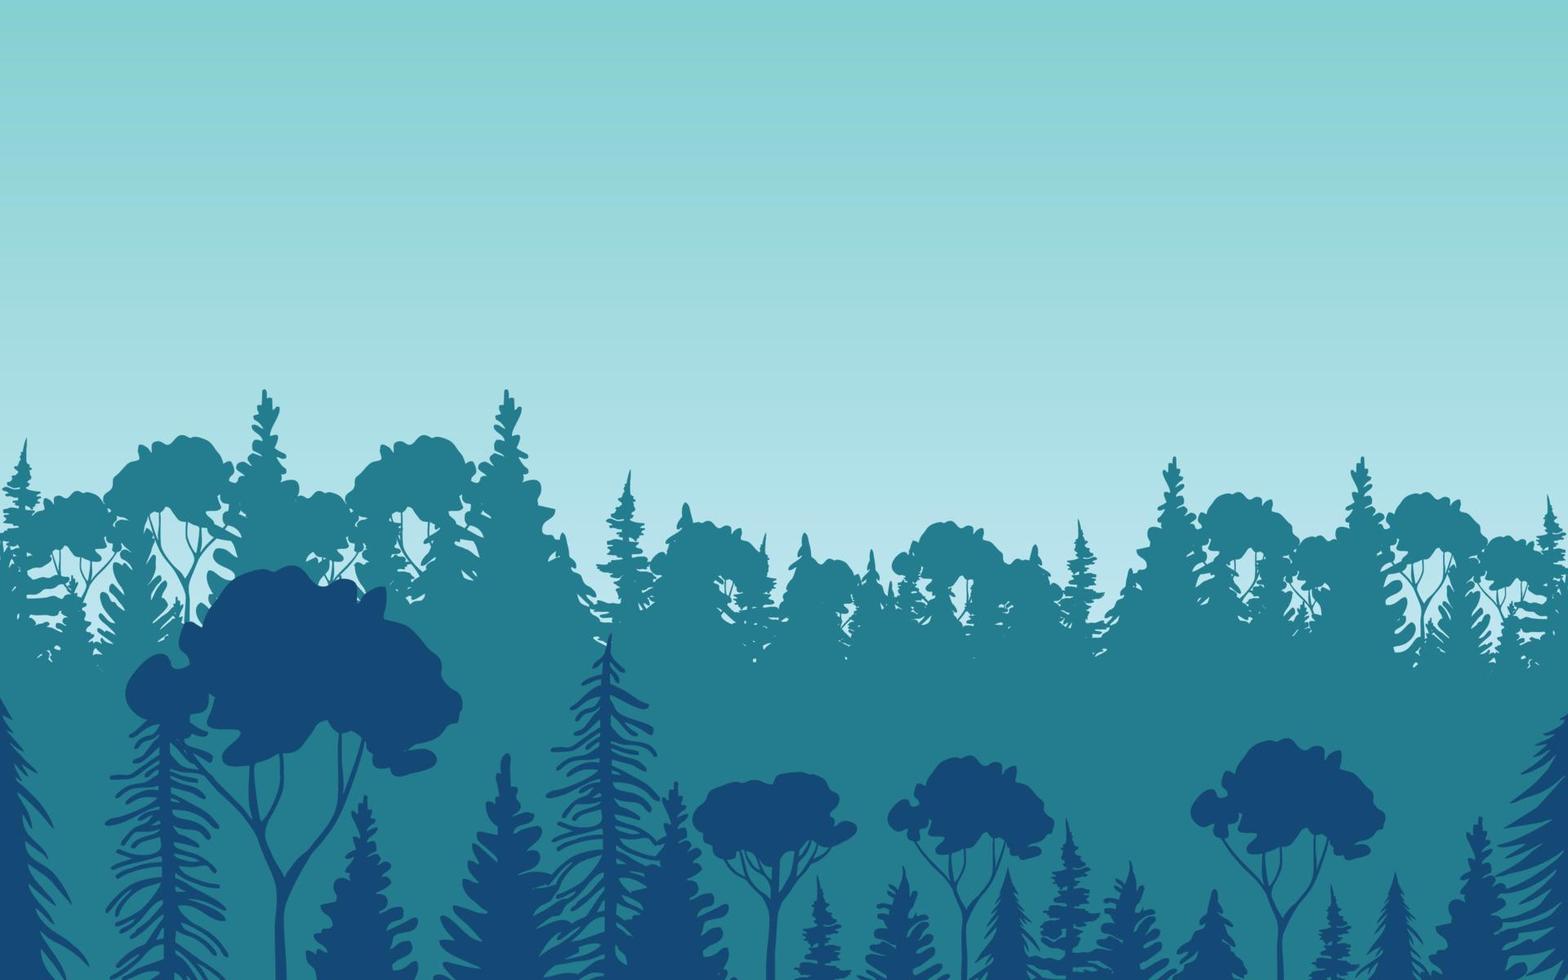 ilustração da paisagem da floresta vetor